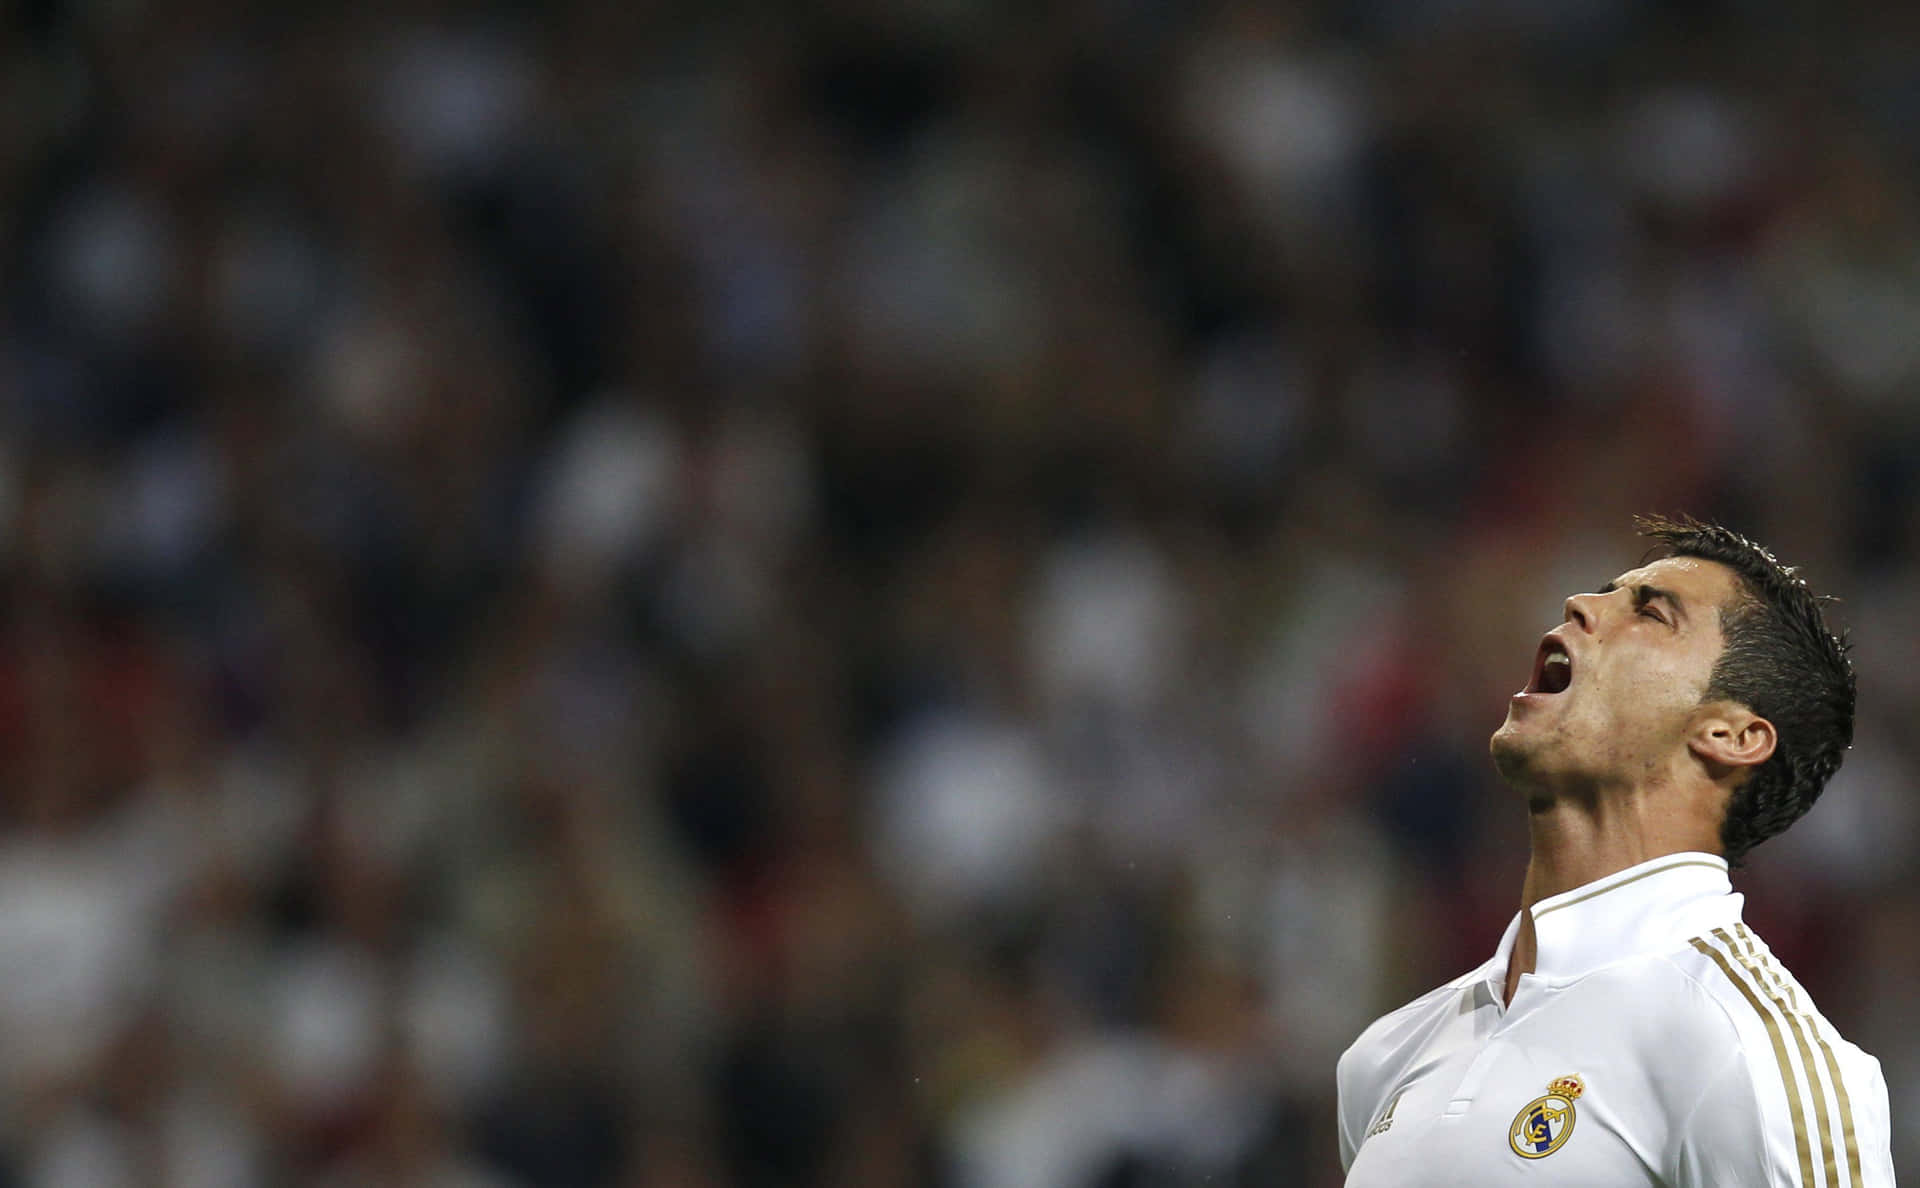 Portuguese football superstar Cristiano Ronaldo showcasing his signature free-kick technique